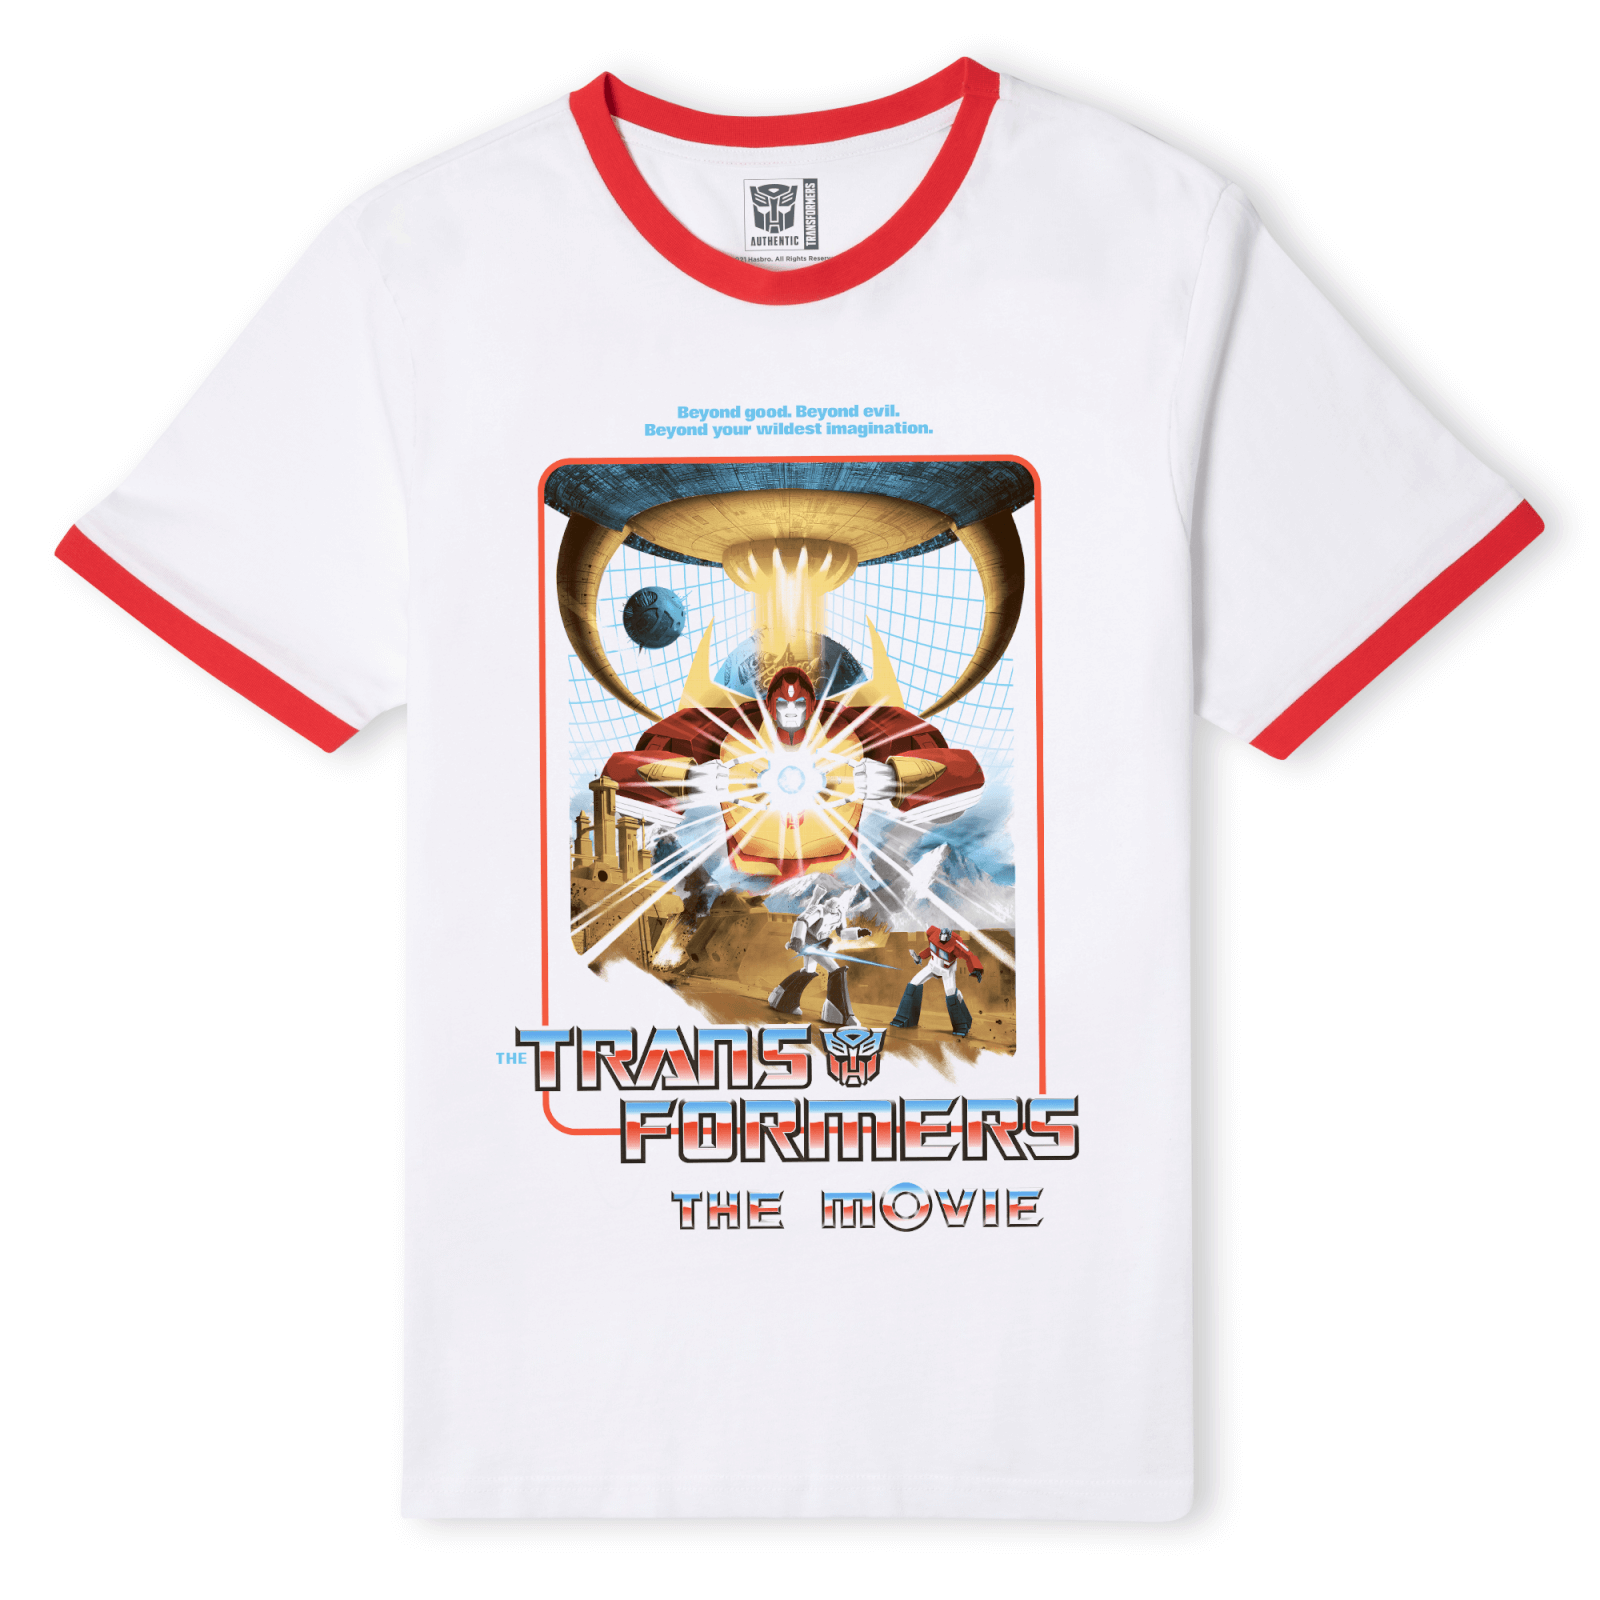 Matt Ferguson x Transformers 1986 Unisex Ringer T-Shirt - White/Red - S - White/Red